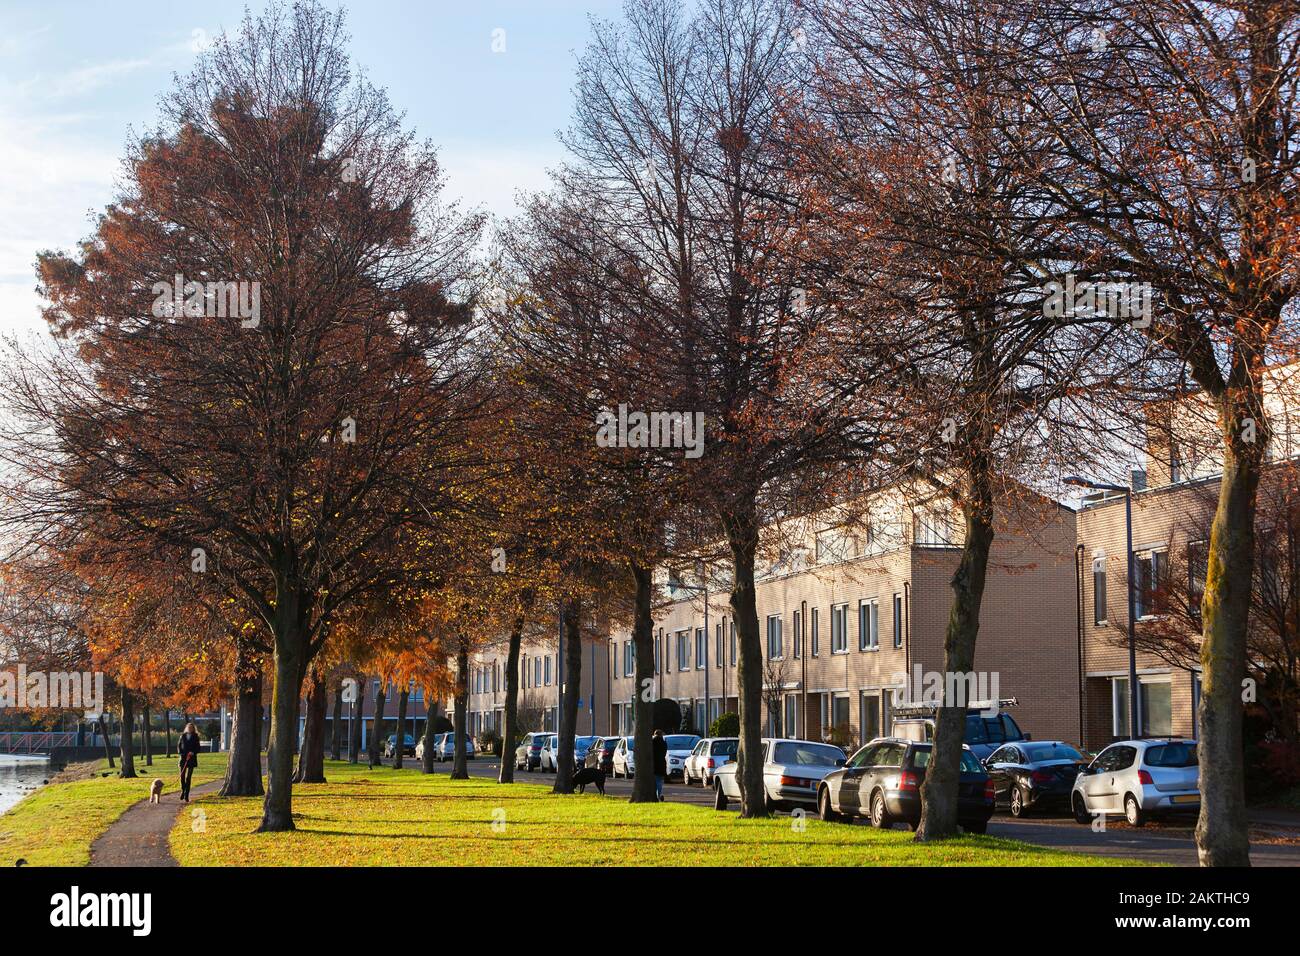 Wohnviertel mit Bäumen, Gras, geparkten Autos und einer bewegungsunscharfen Frau, die in Rotterdam-Prinsenland in den Niederlanden den Hund spazieren geht Stockfoto